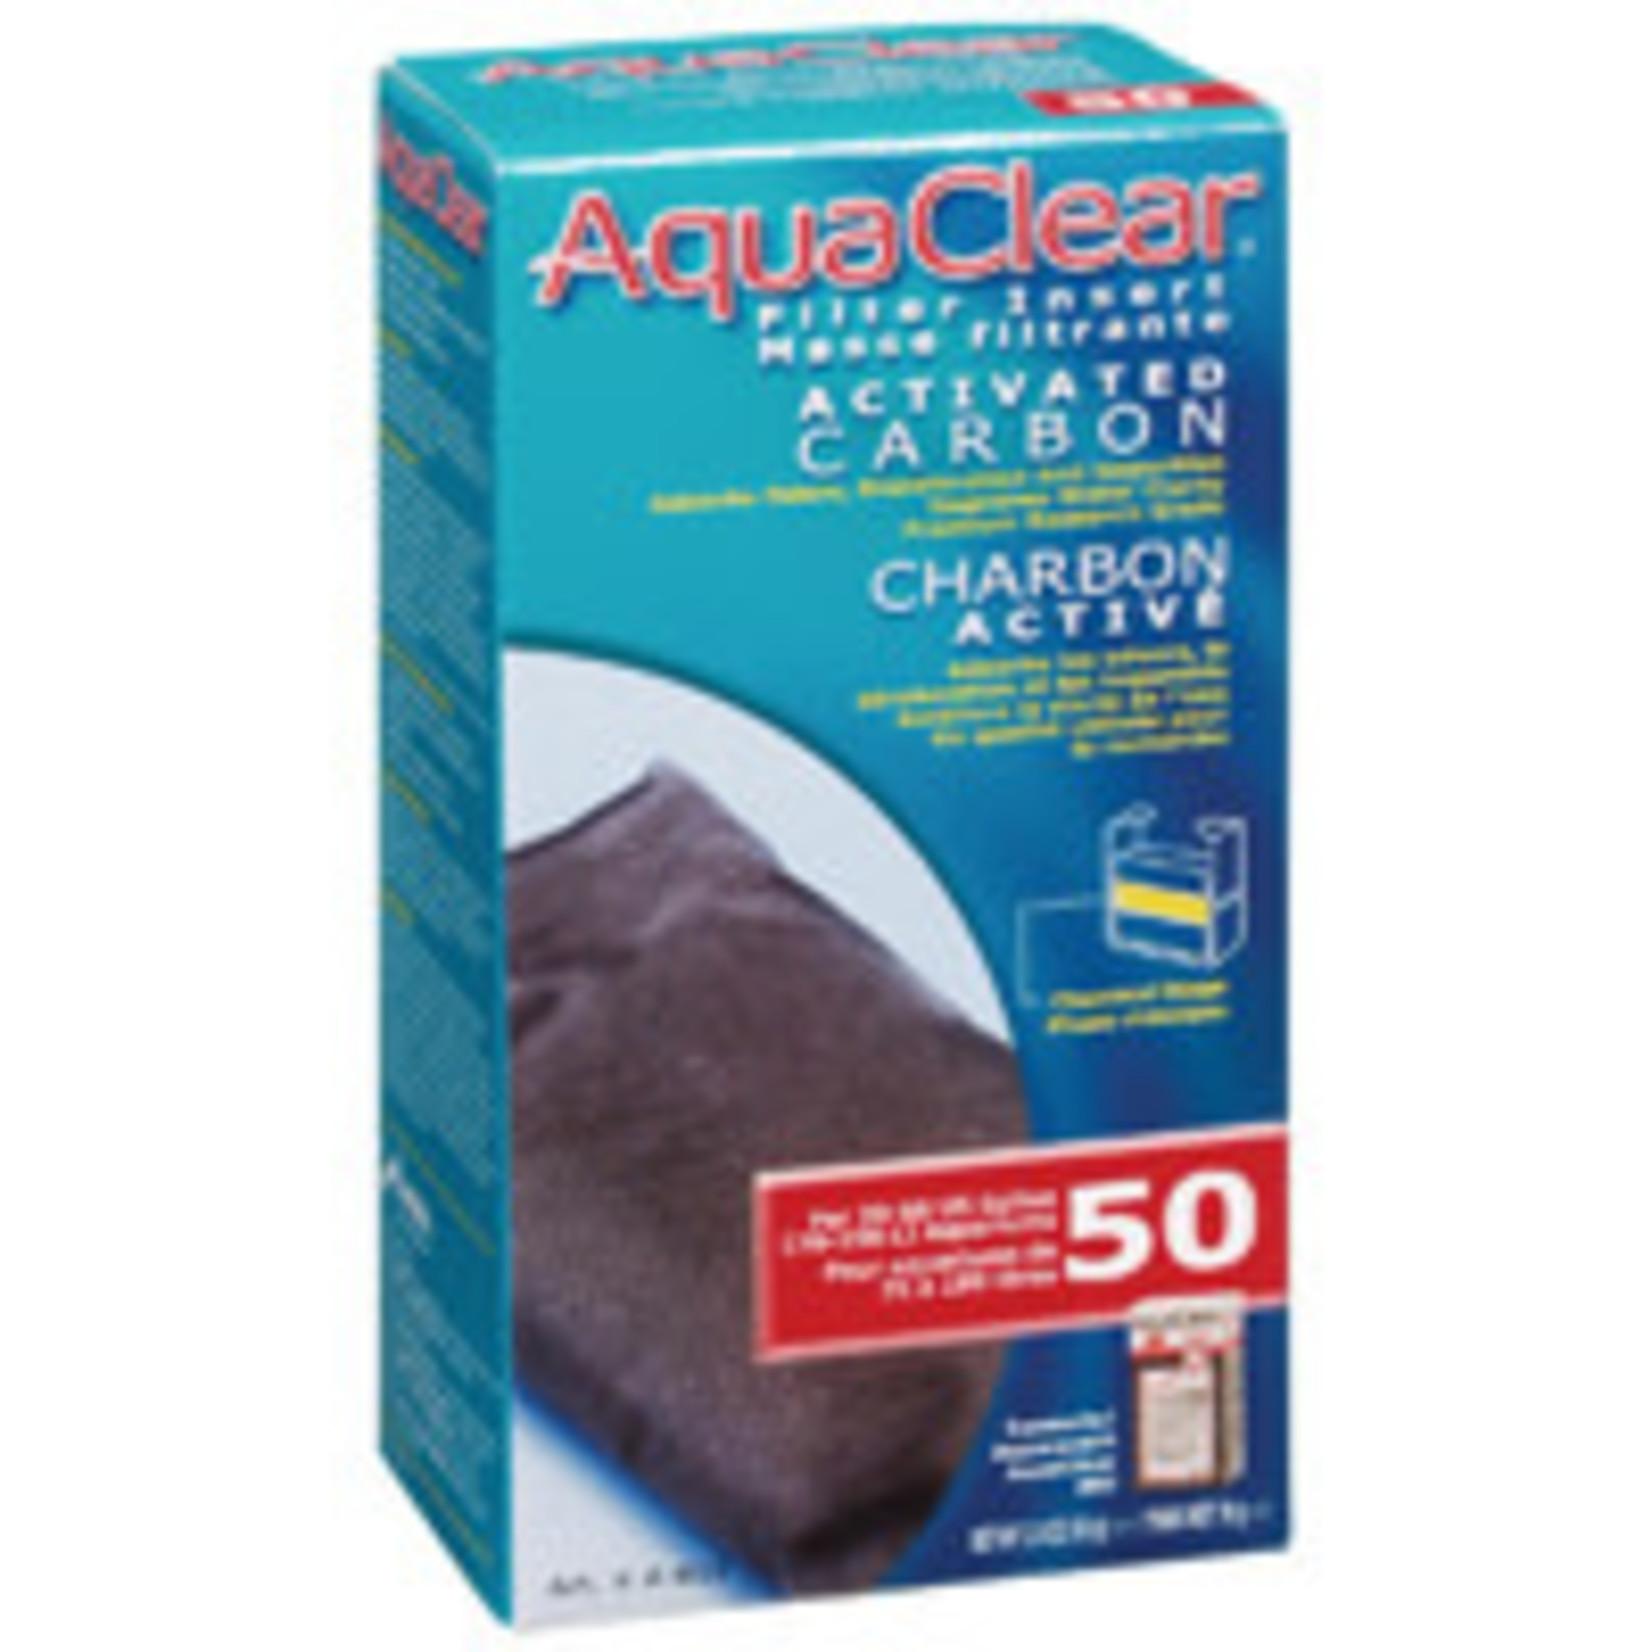 AquaClear Aqua Clear 50 (200) Act. Insert